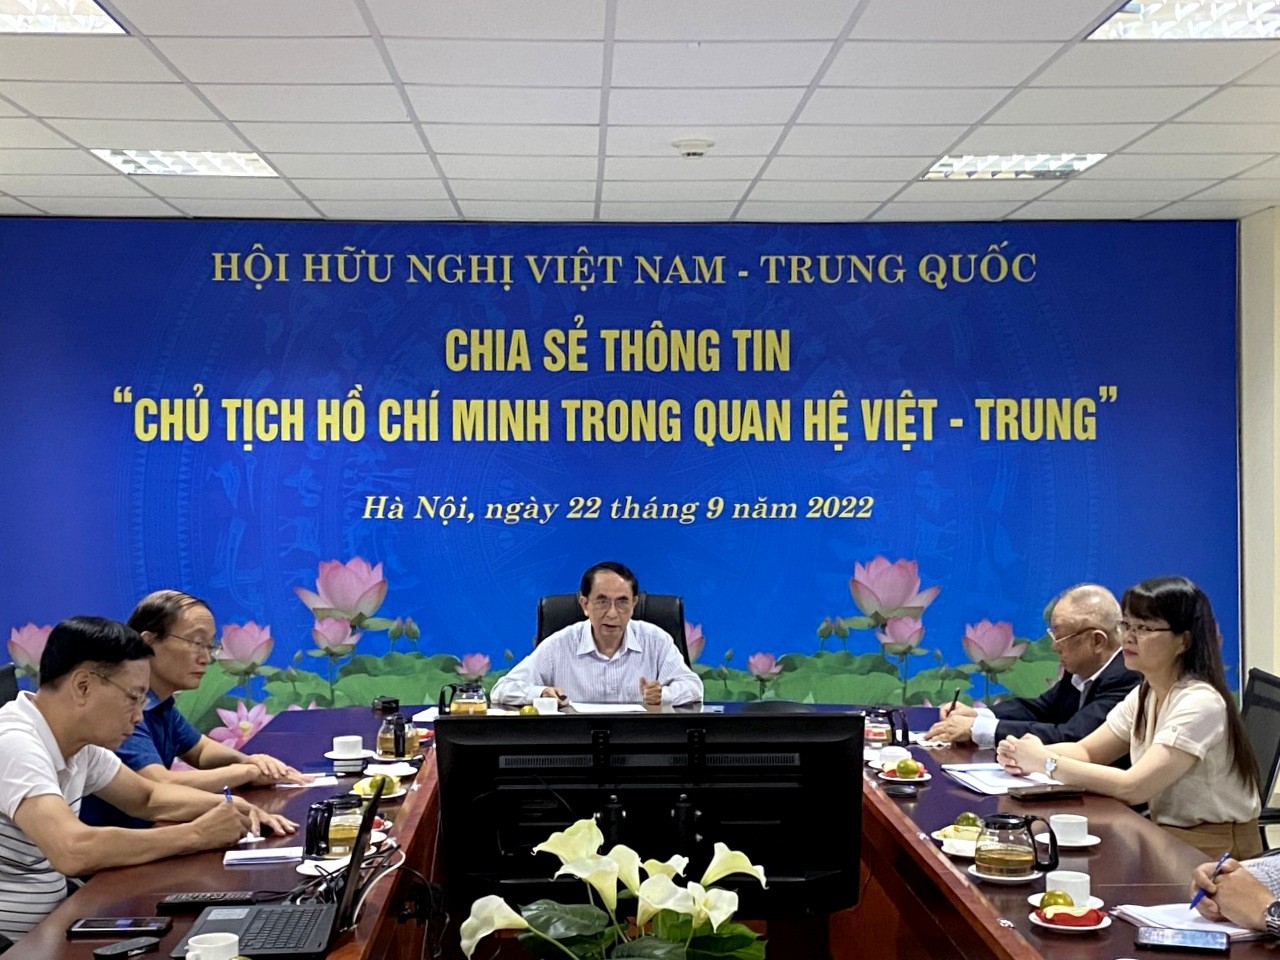 Chủ tịch Hồ Chí Minh trong quan hệ Việt - Trung